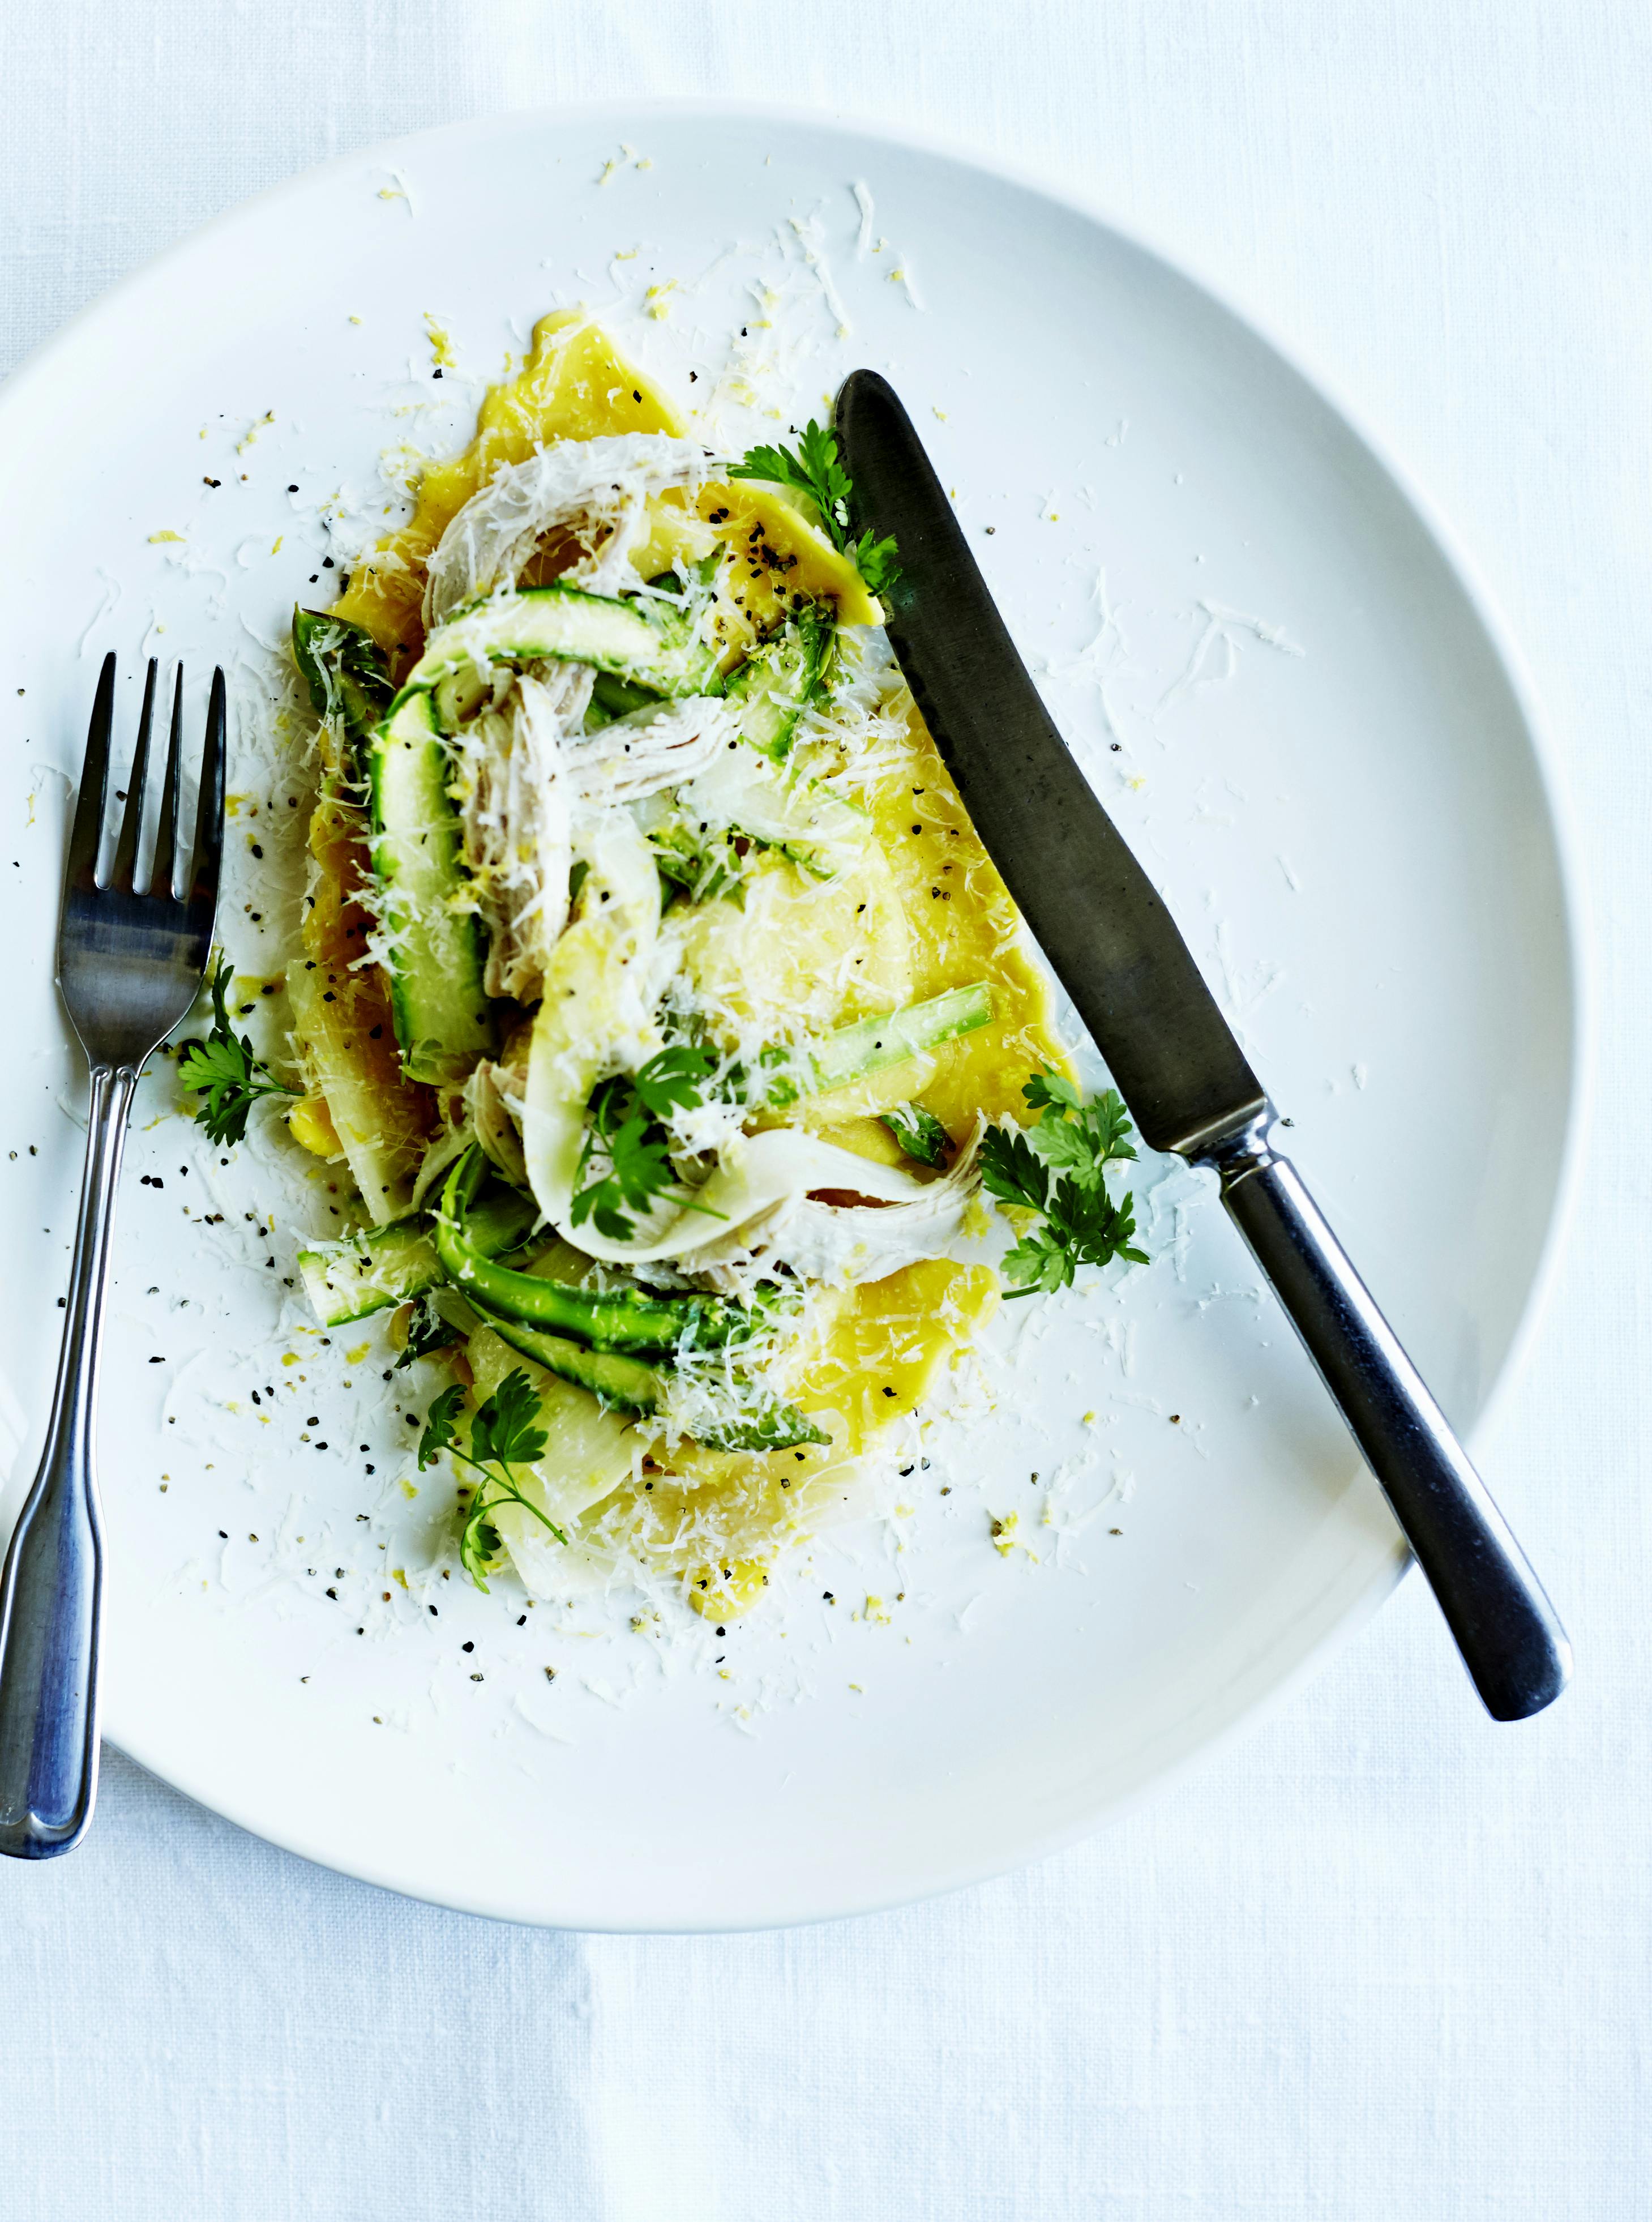 Ravioli med grønne asparges og kylling er nem og dejlig aftensmad